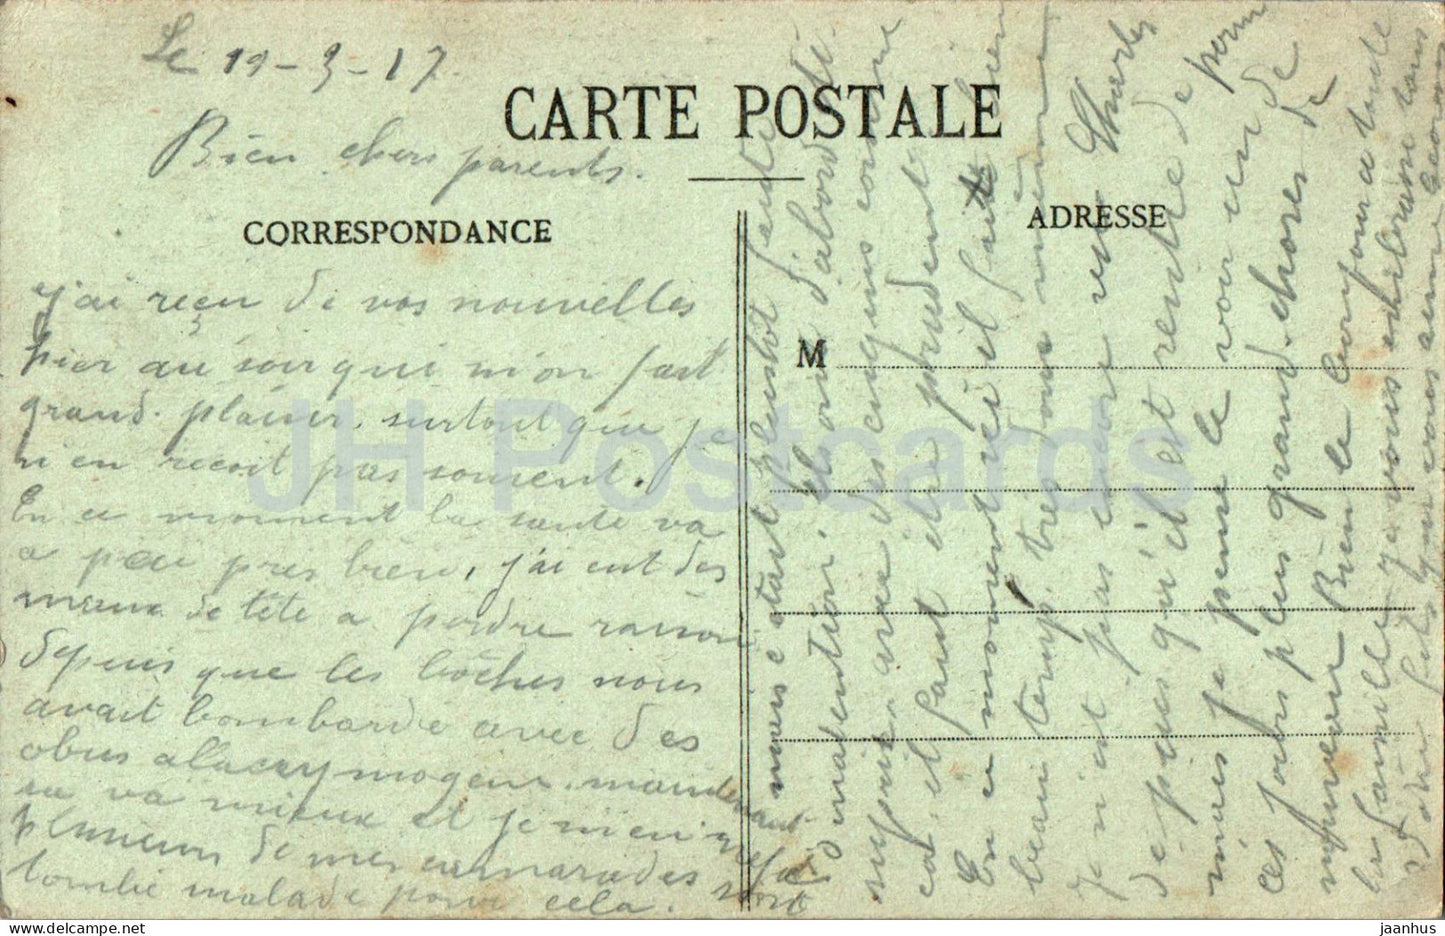 L'Argonne - Sainte Menehould - L'Eglise du Chateau - avion - l'avion - carte postale ancienne - 1917 - France - occasion 